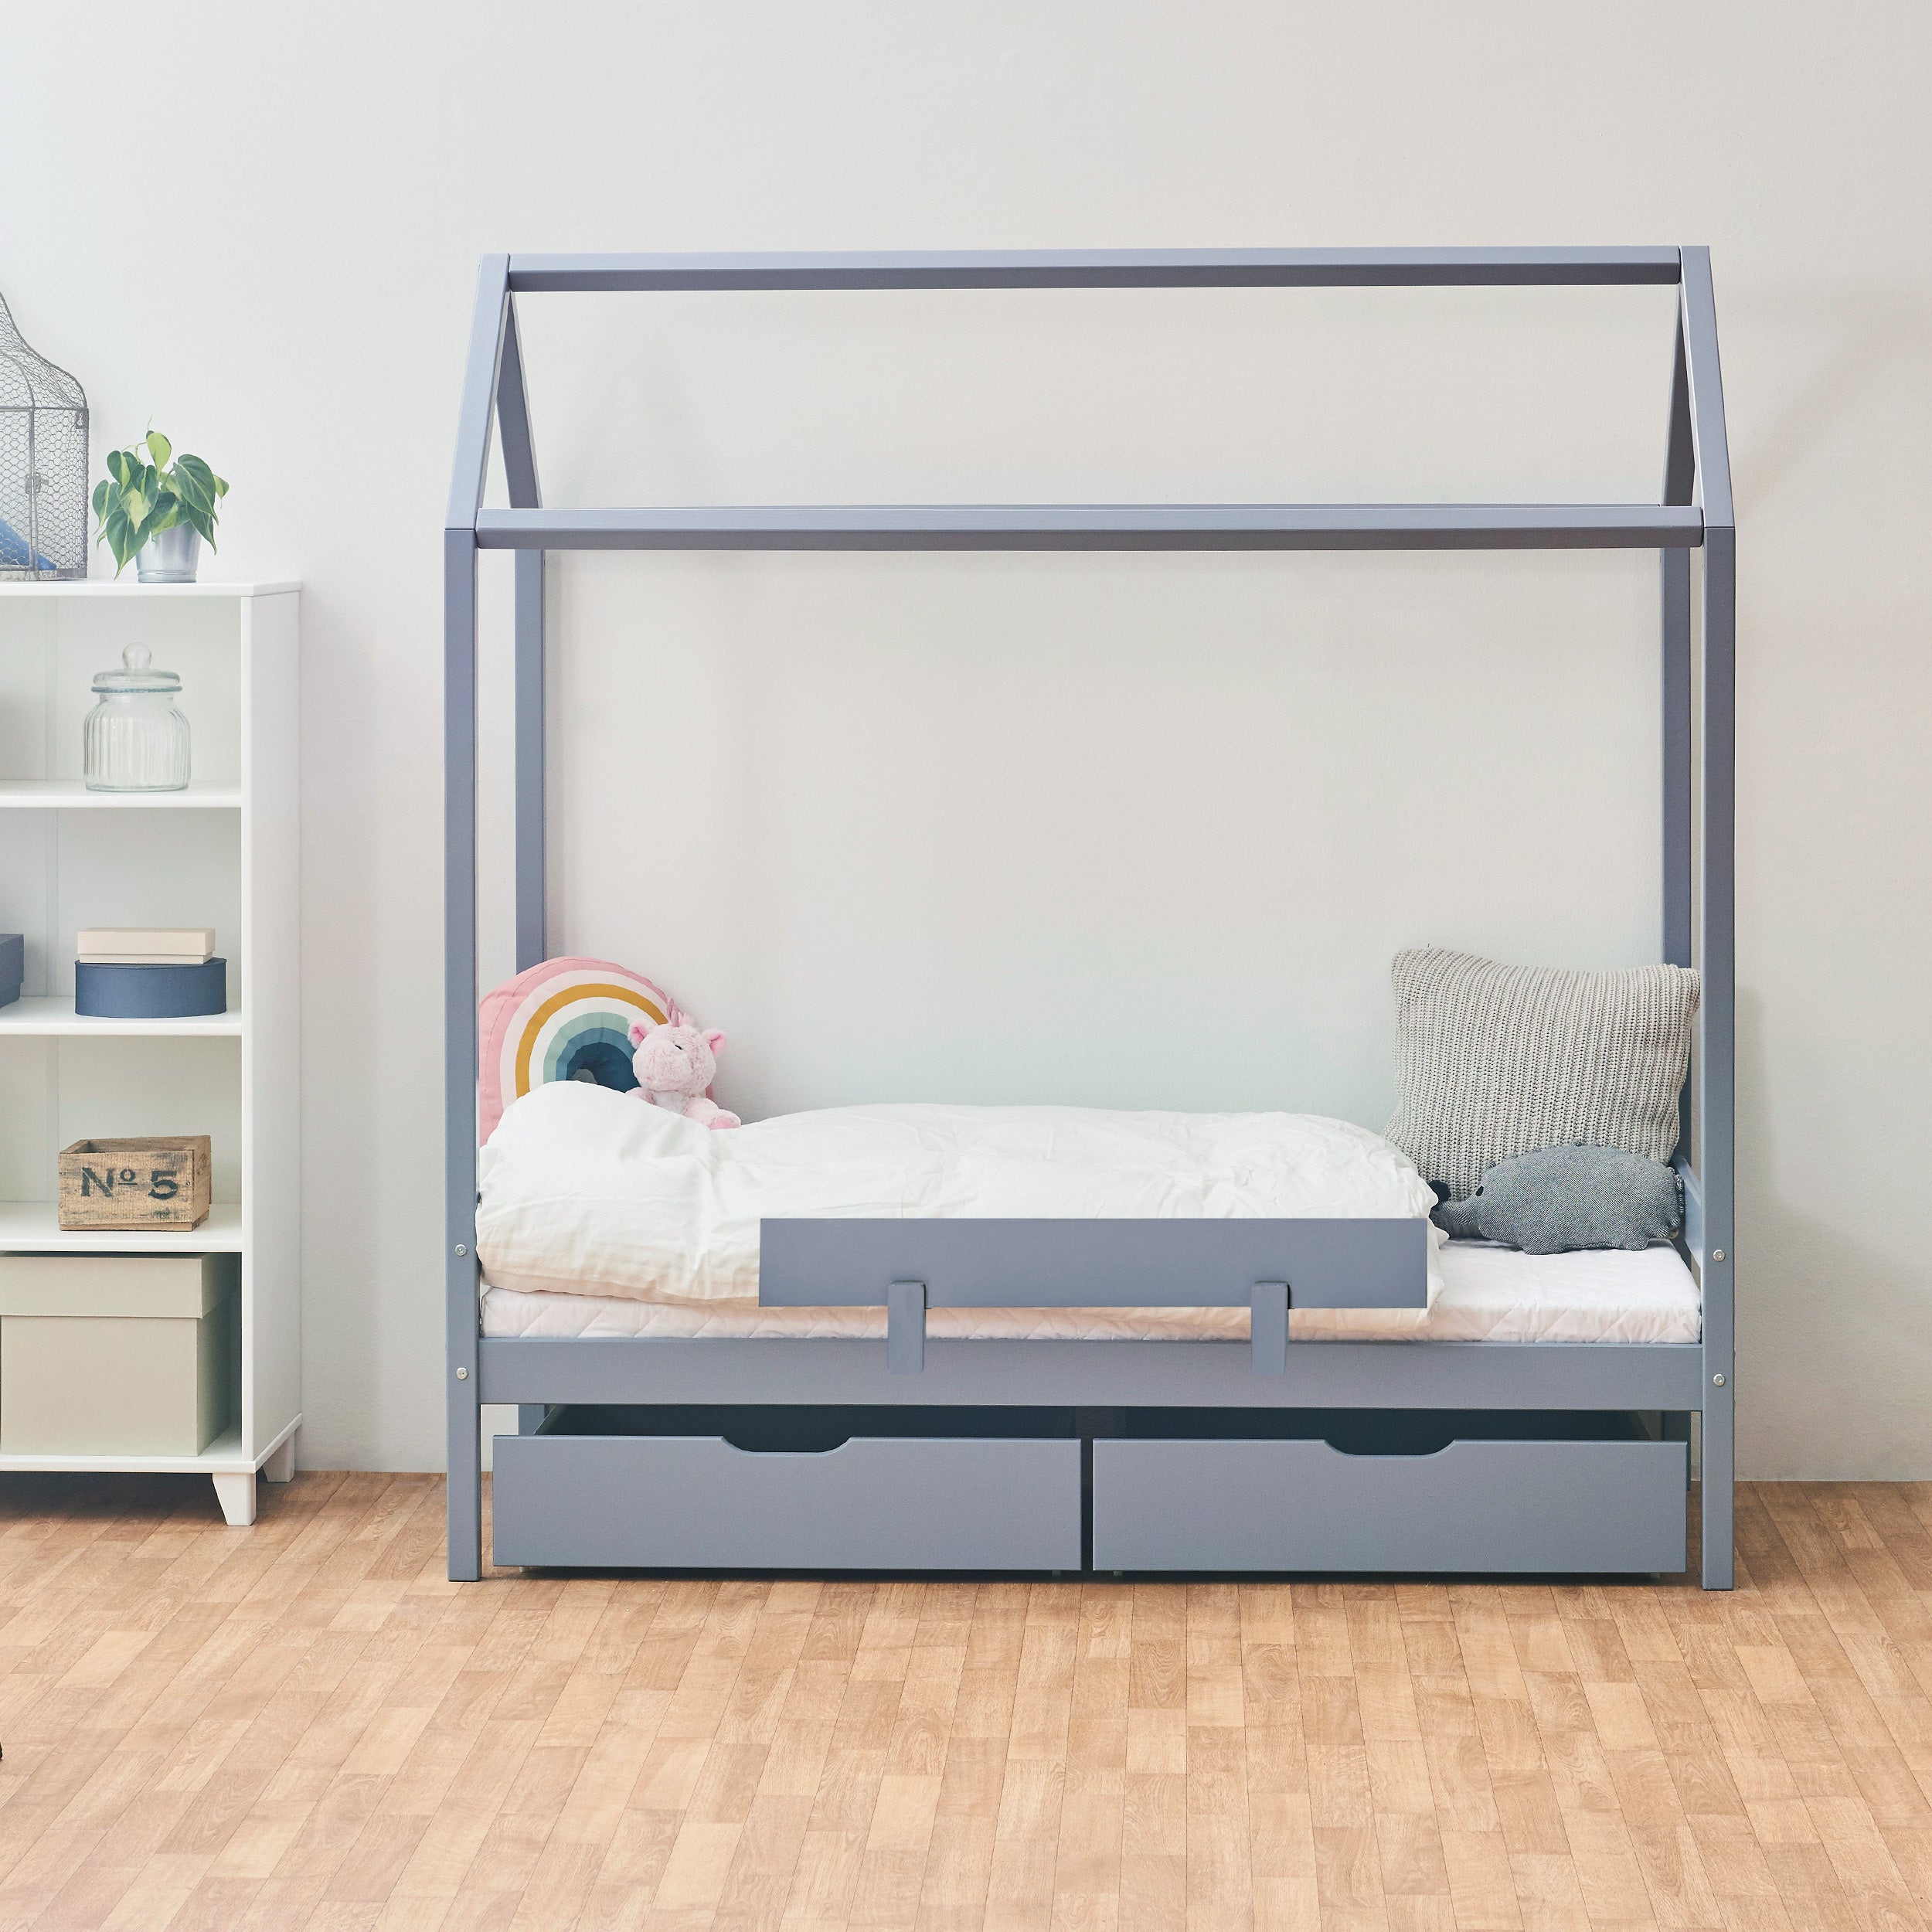 Outlet: ECO Comfort husseng med skuffer & sengehest, Blå-Grå